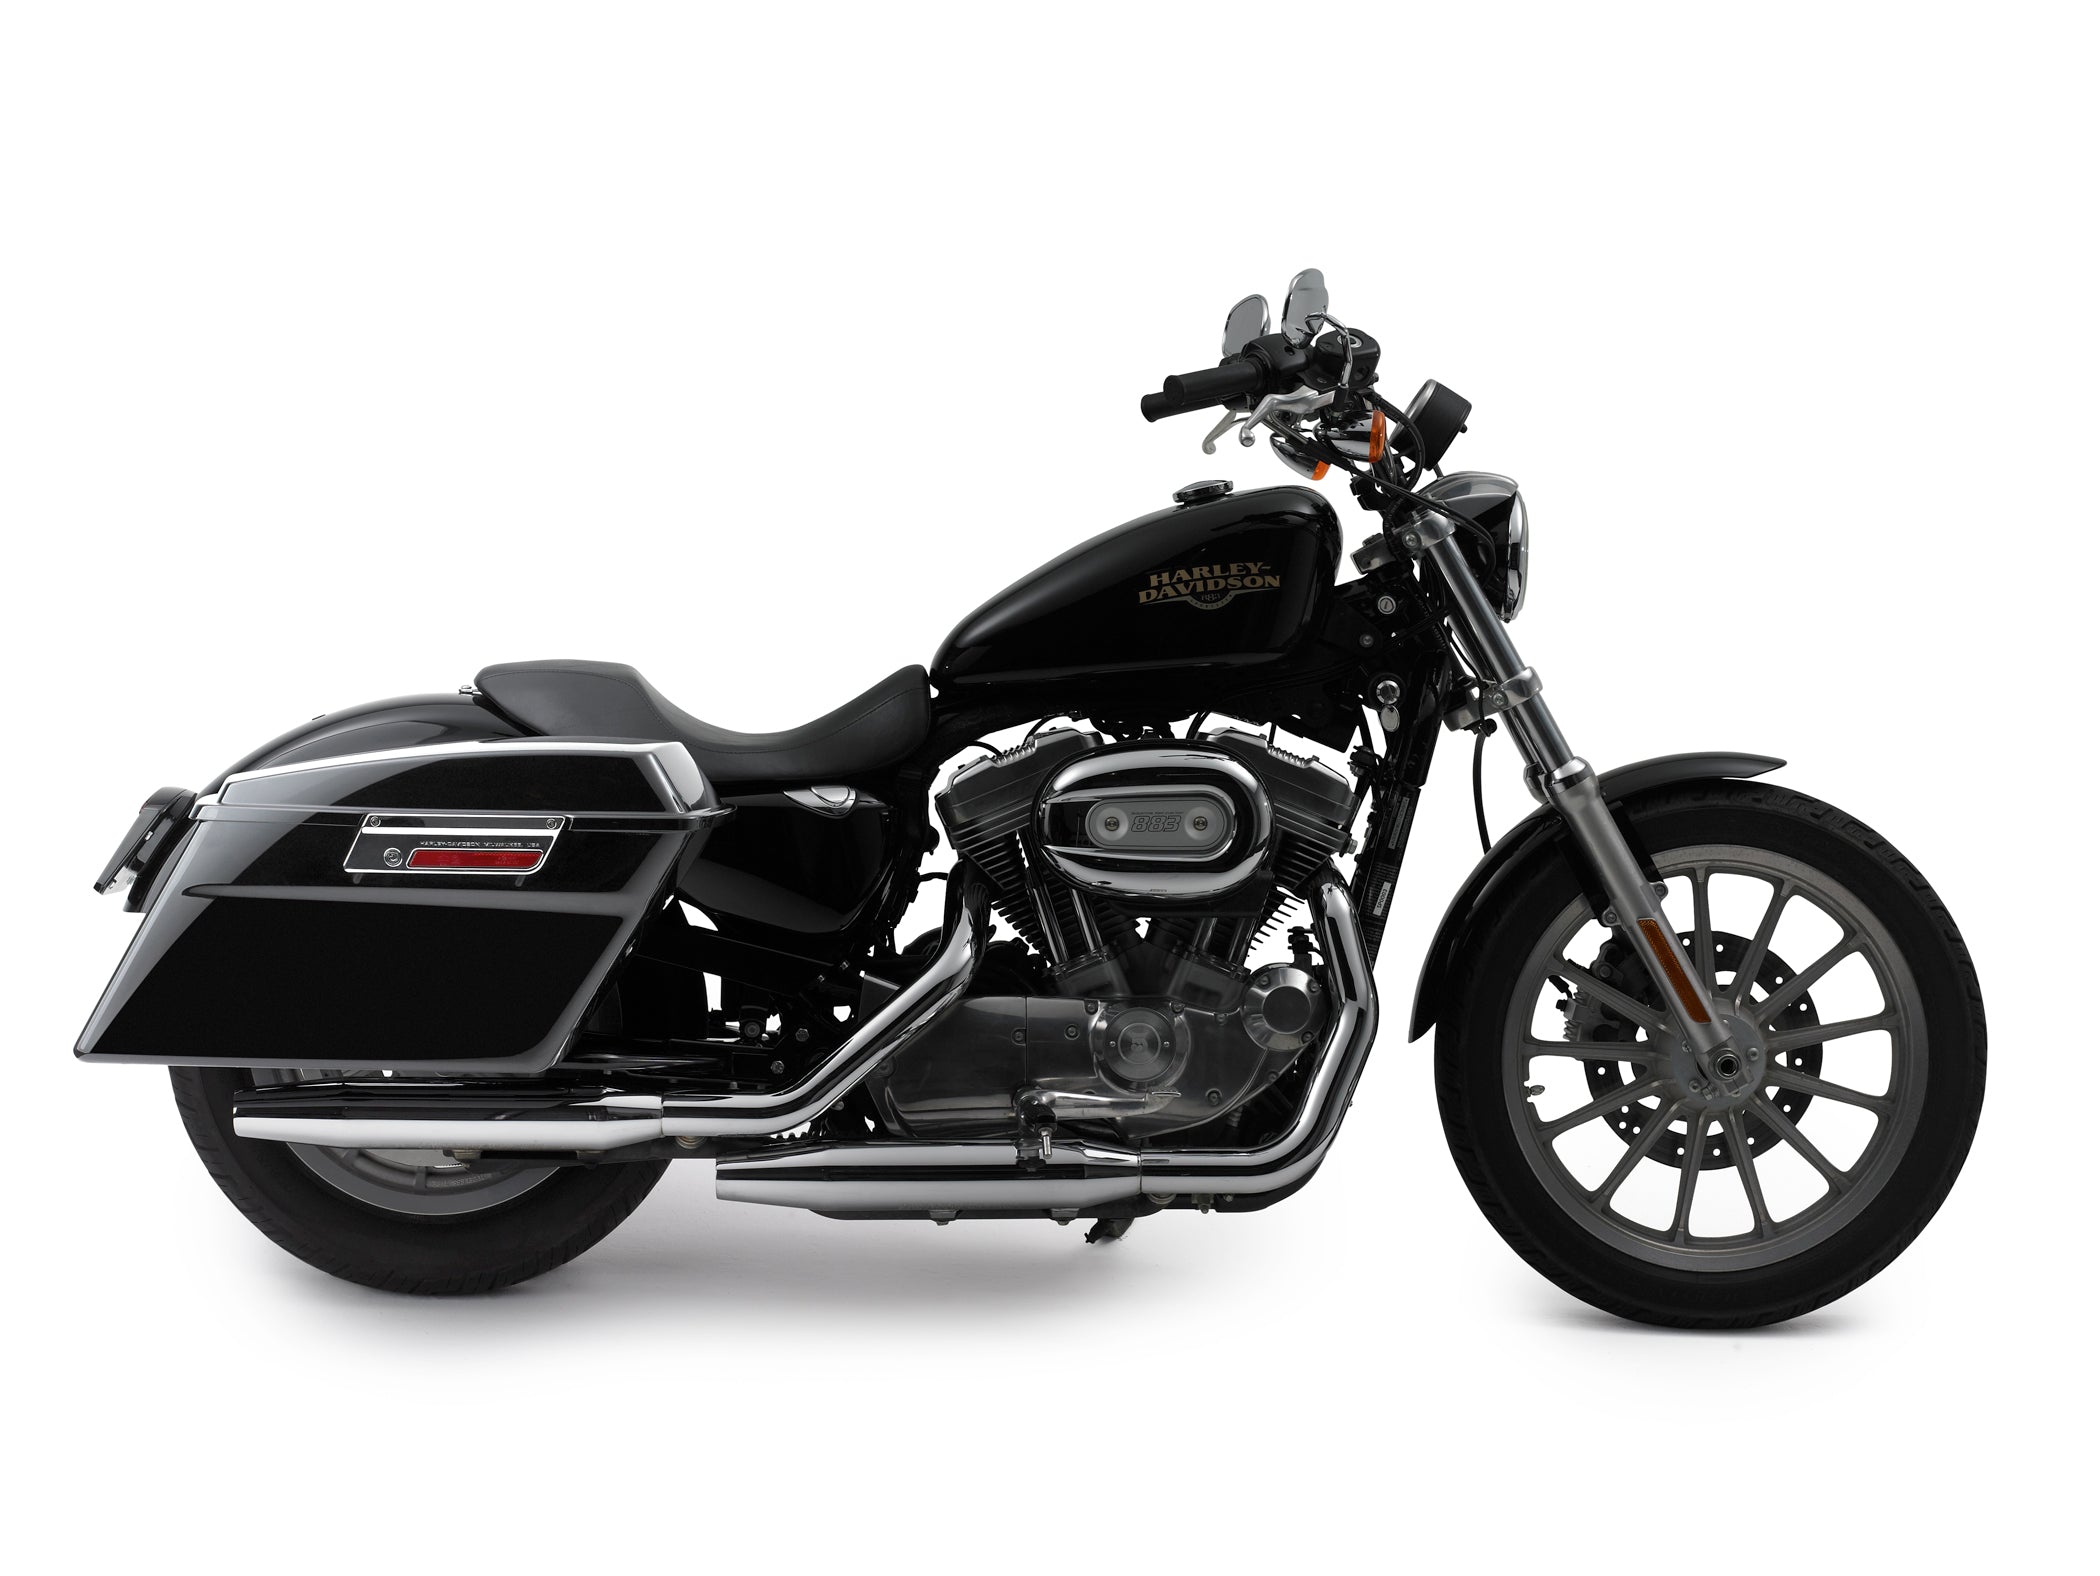 Bagster Saddlebag Mount for Harley Davidson Sportster